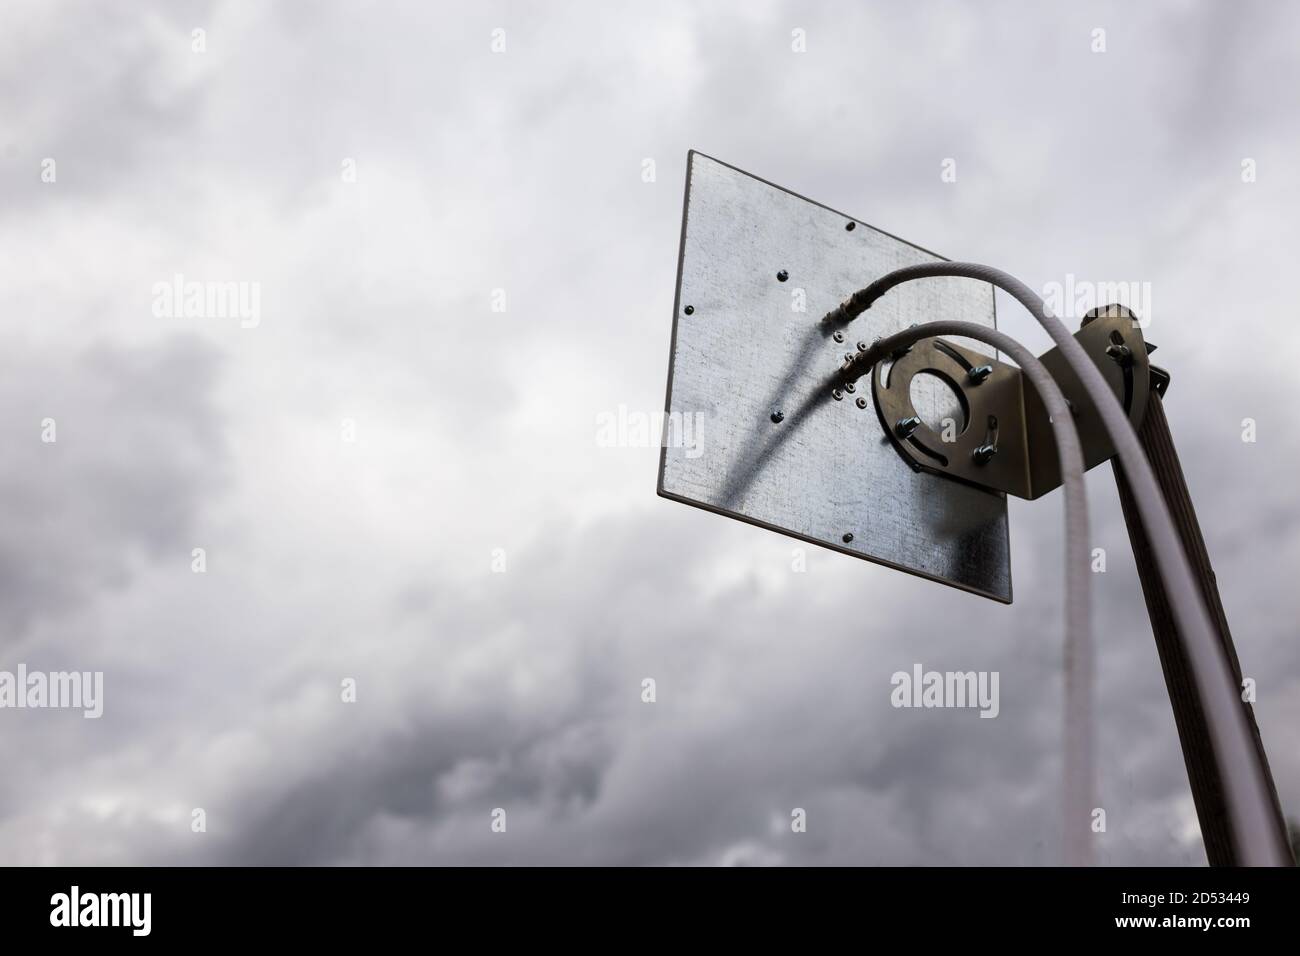 Antenna 4G montata su un palo esterno in mezzo a una tempesta imminente. Foto Stock